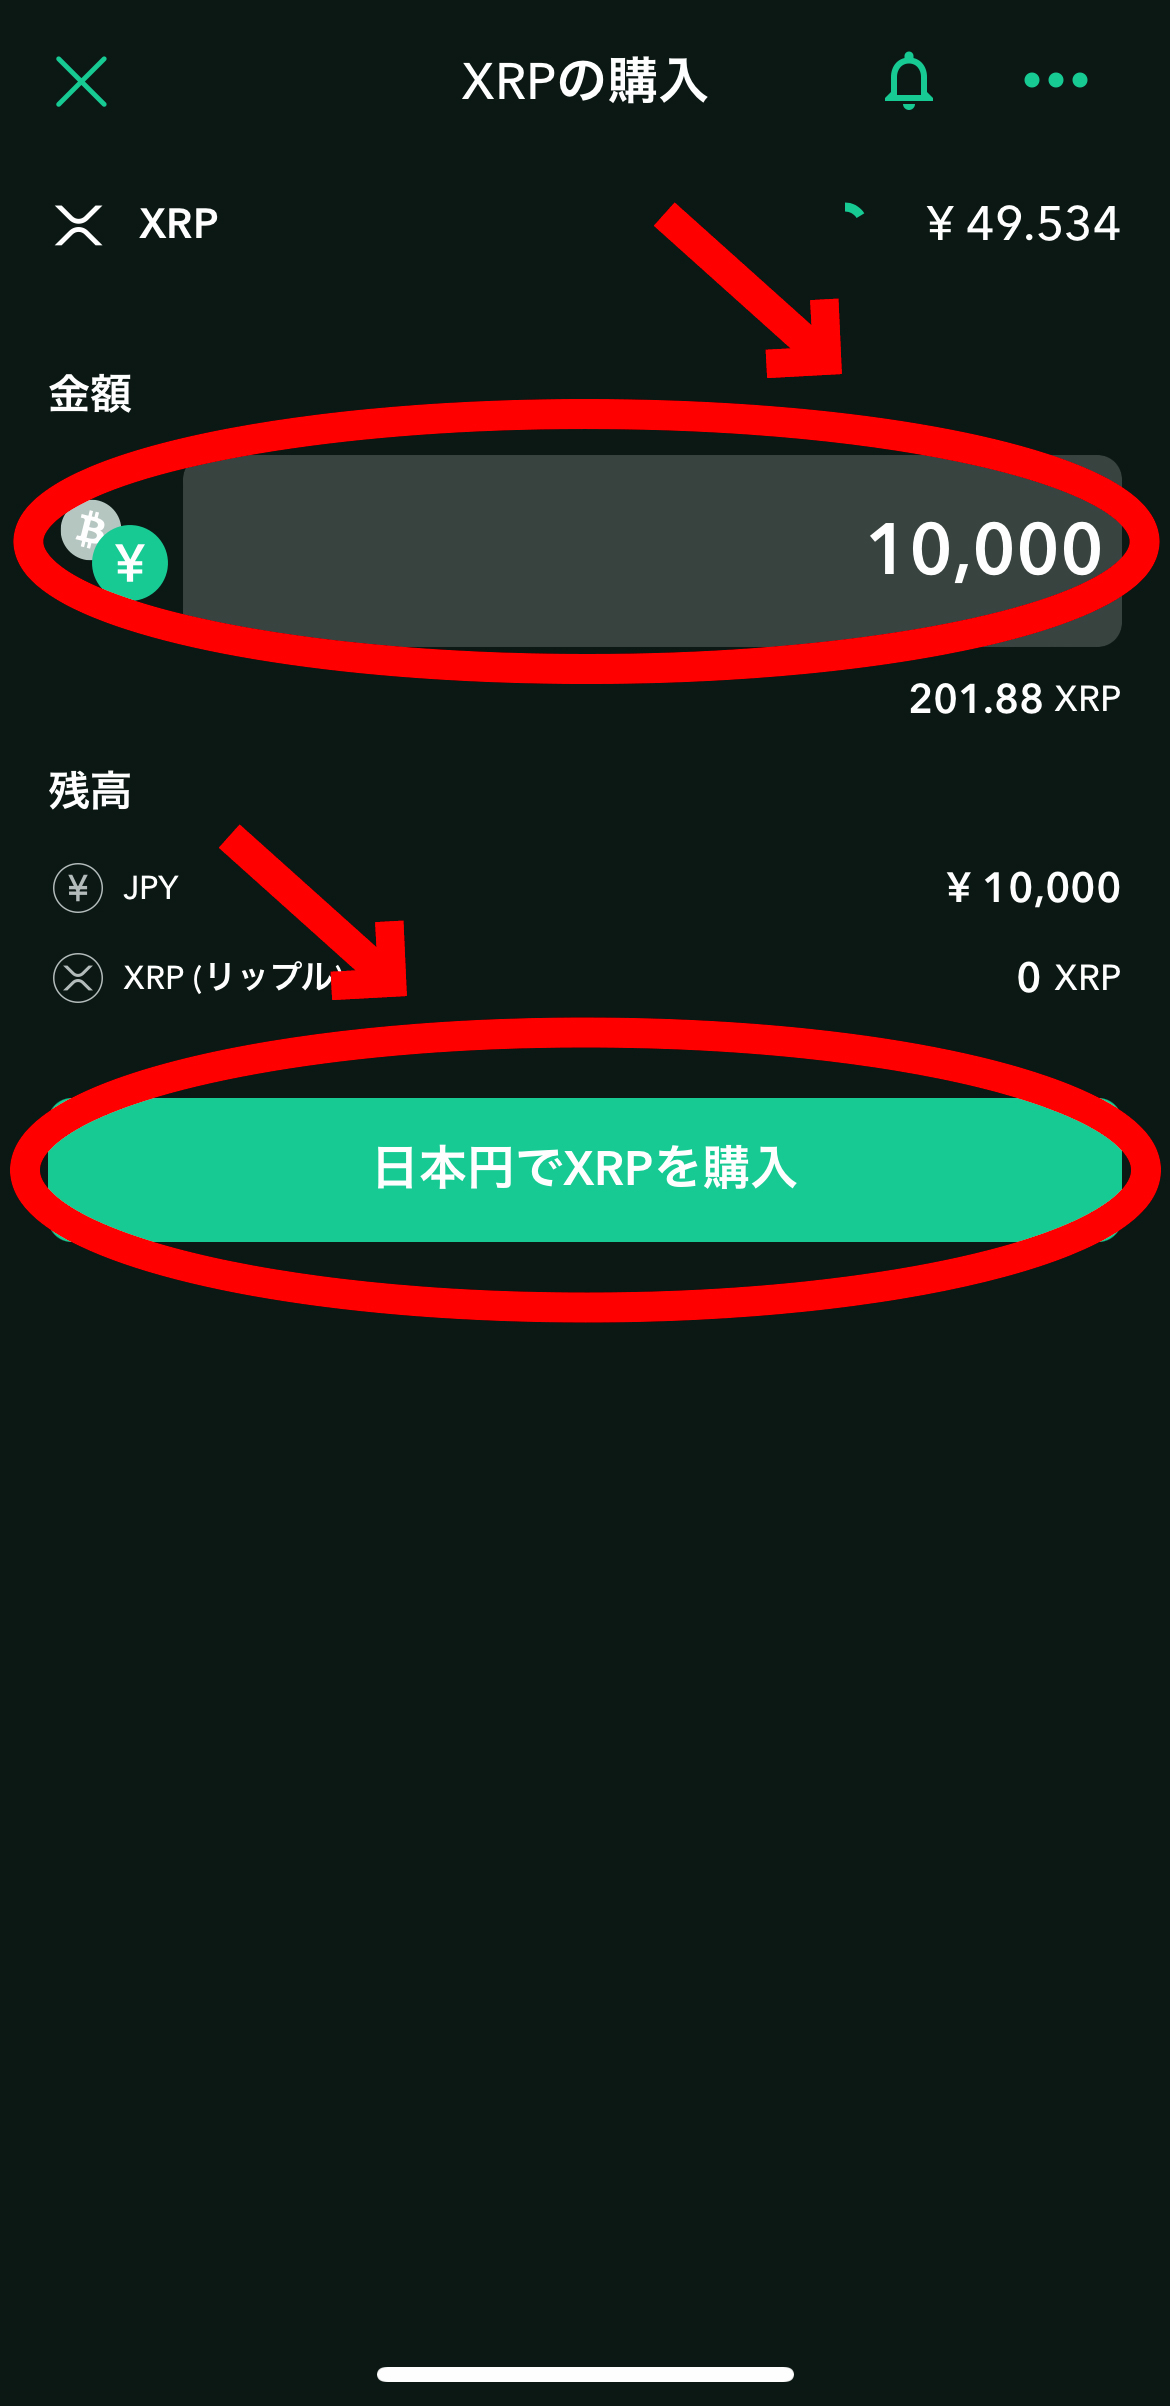 バイビットの登録方法、仮想通貨購入方法【Bybit】【入金方法】【スマホで簡単】【初心者向け】日本円でXRPを購入をクリックします。